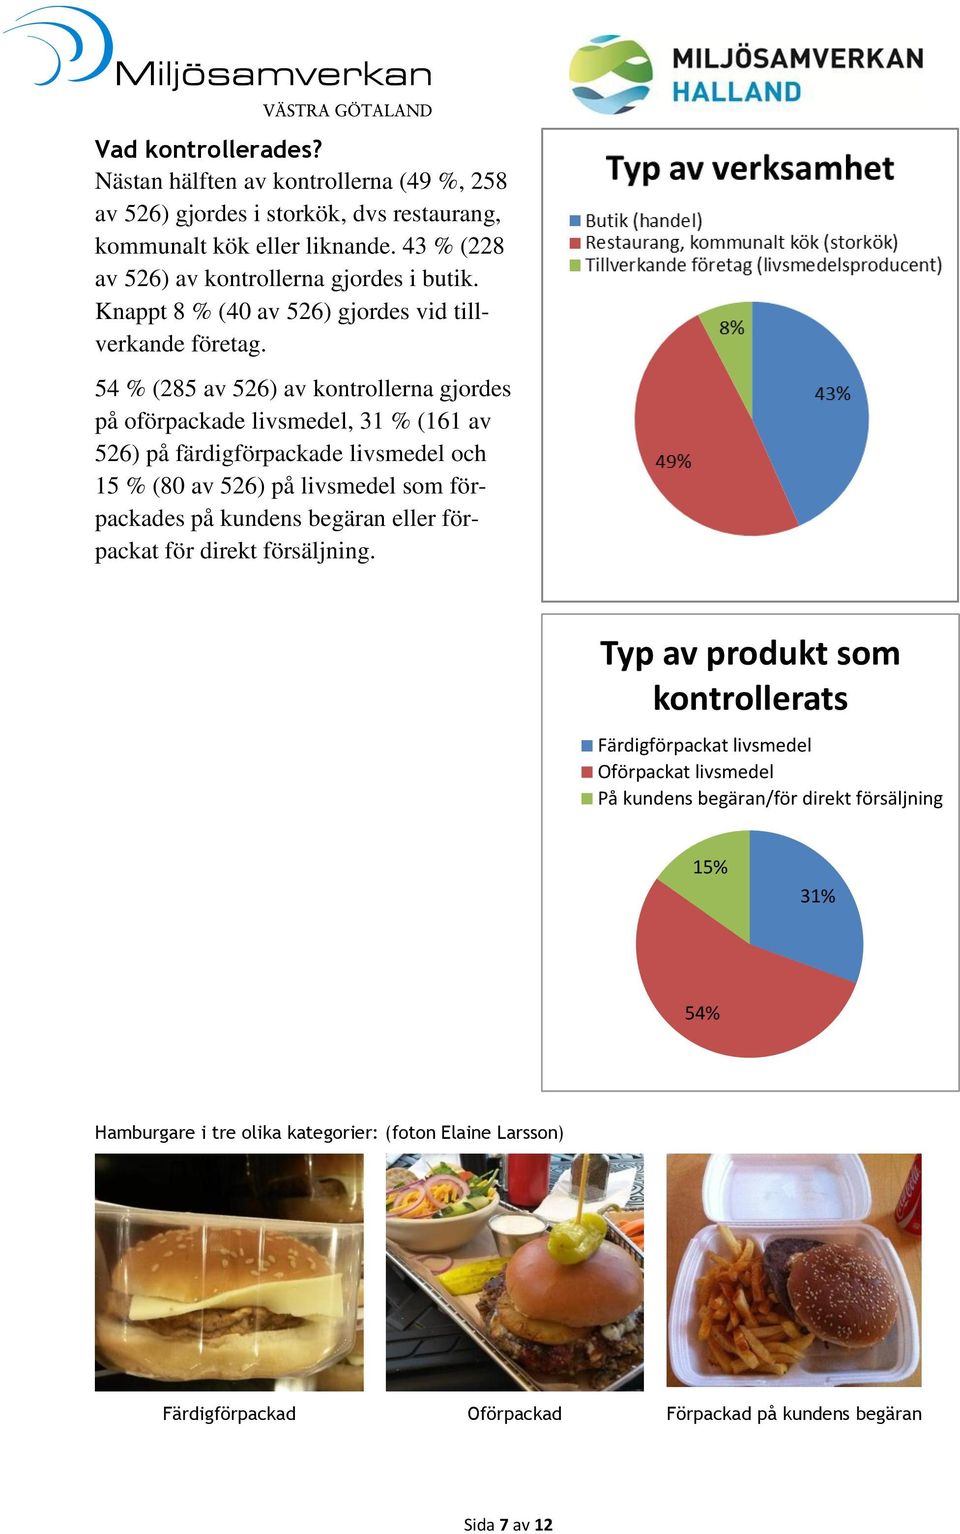 54 % (285 av 526) av kontrollerna gjordes på oförpackade livsmedel, 31 % (161 av 526) på färdigförpackade livsmedel och 15 % (80 av 526) på livsmedel som förpackades på kundens